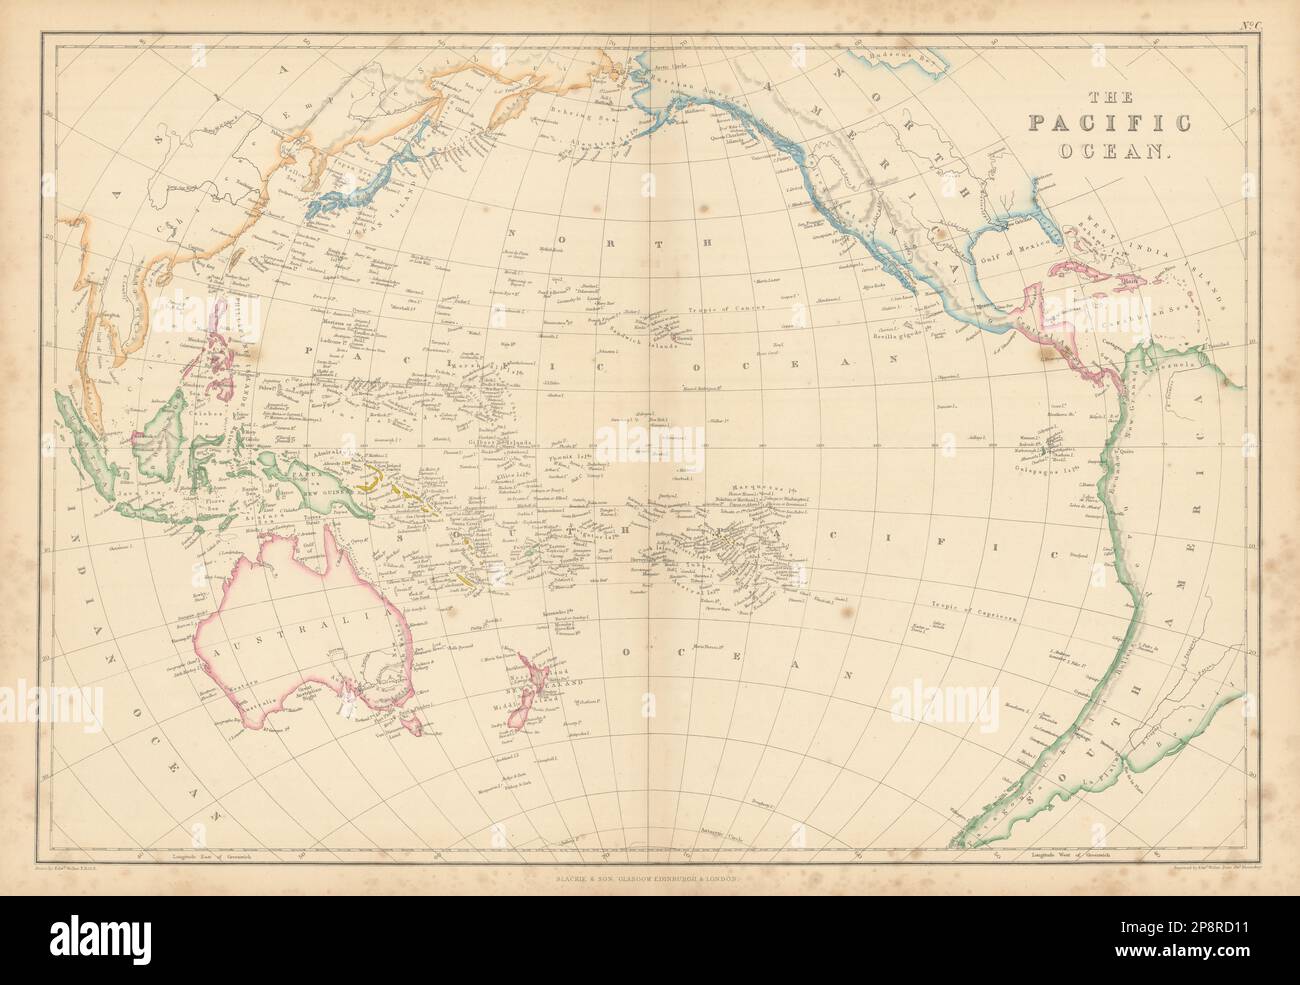 L'océan Pacifique par Edward Weller. Polynésie Micronésie Melanesia 1859 carte Banque D'Images